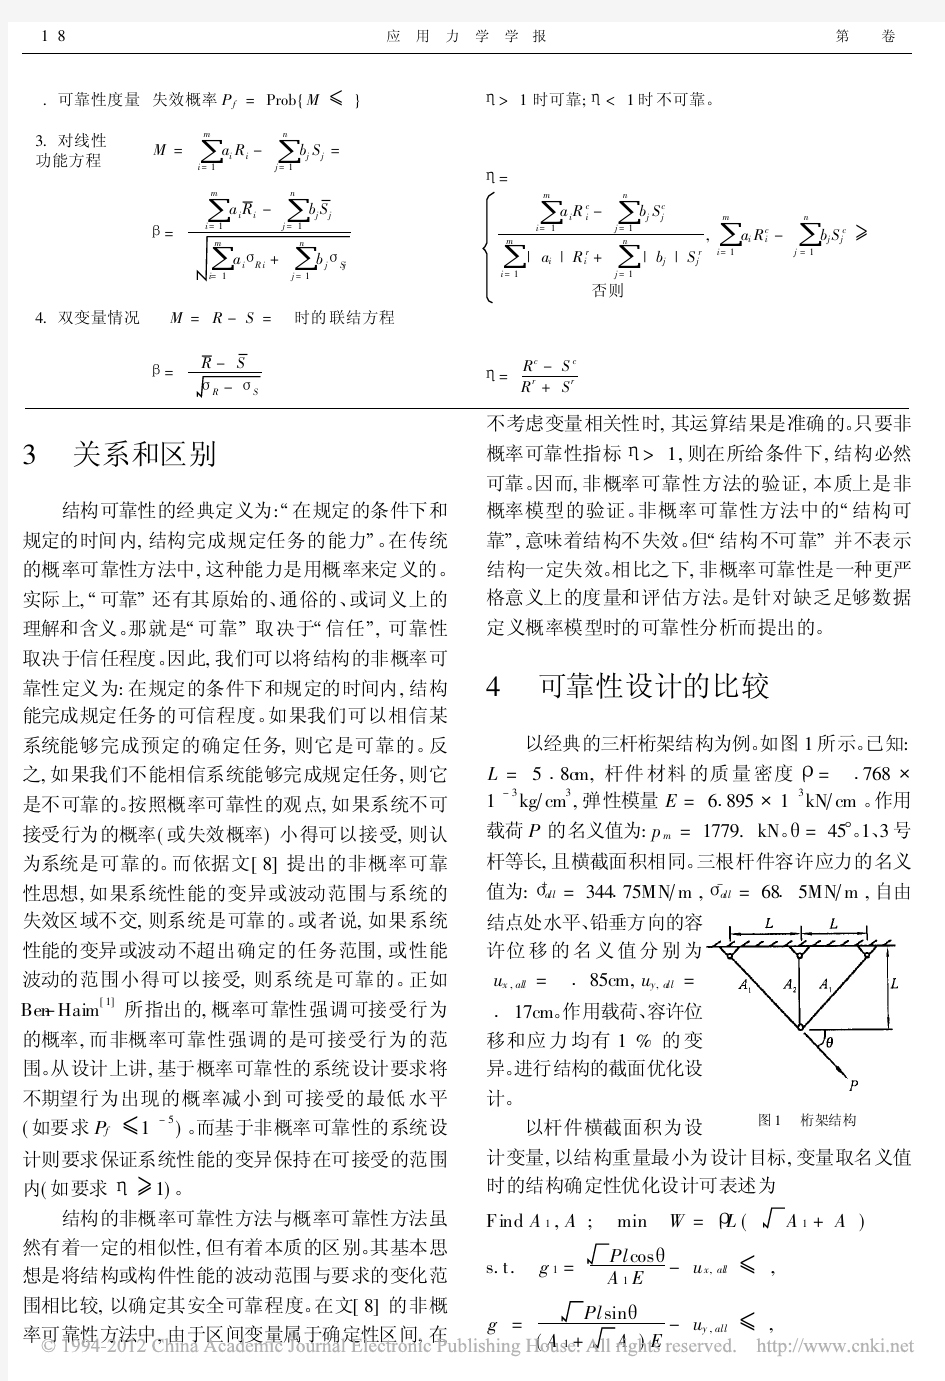 结构的非概率可靠性方法和概率可靠性方法的比较_郭书祥